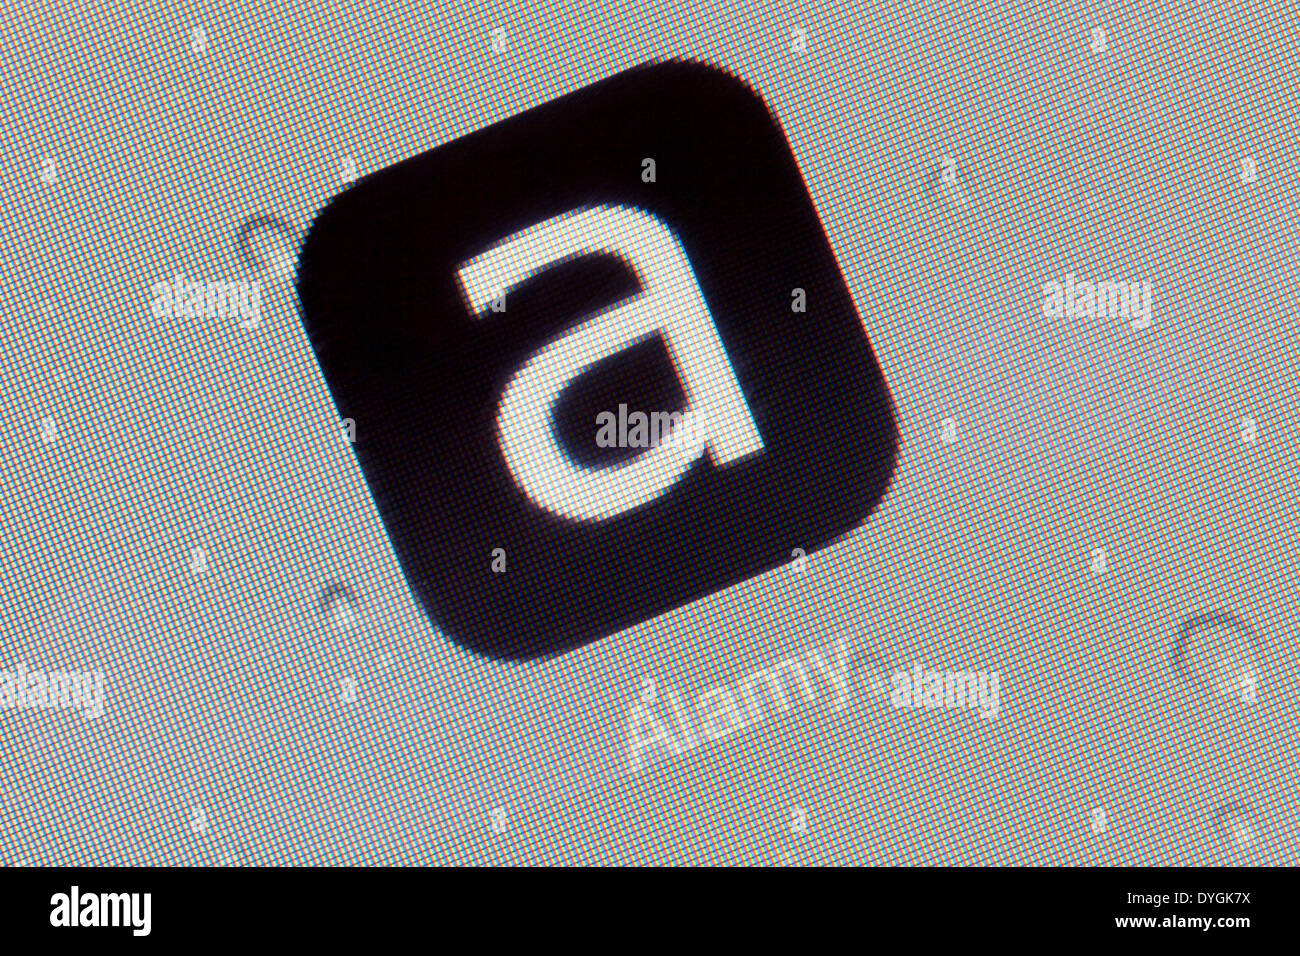 Alamy app logotipo ícono en el iPad apps logos iconos Foto de stock